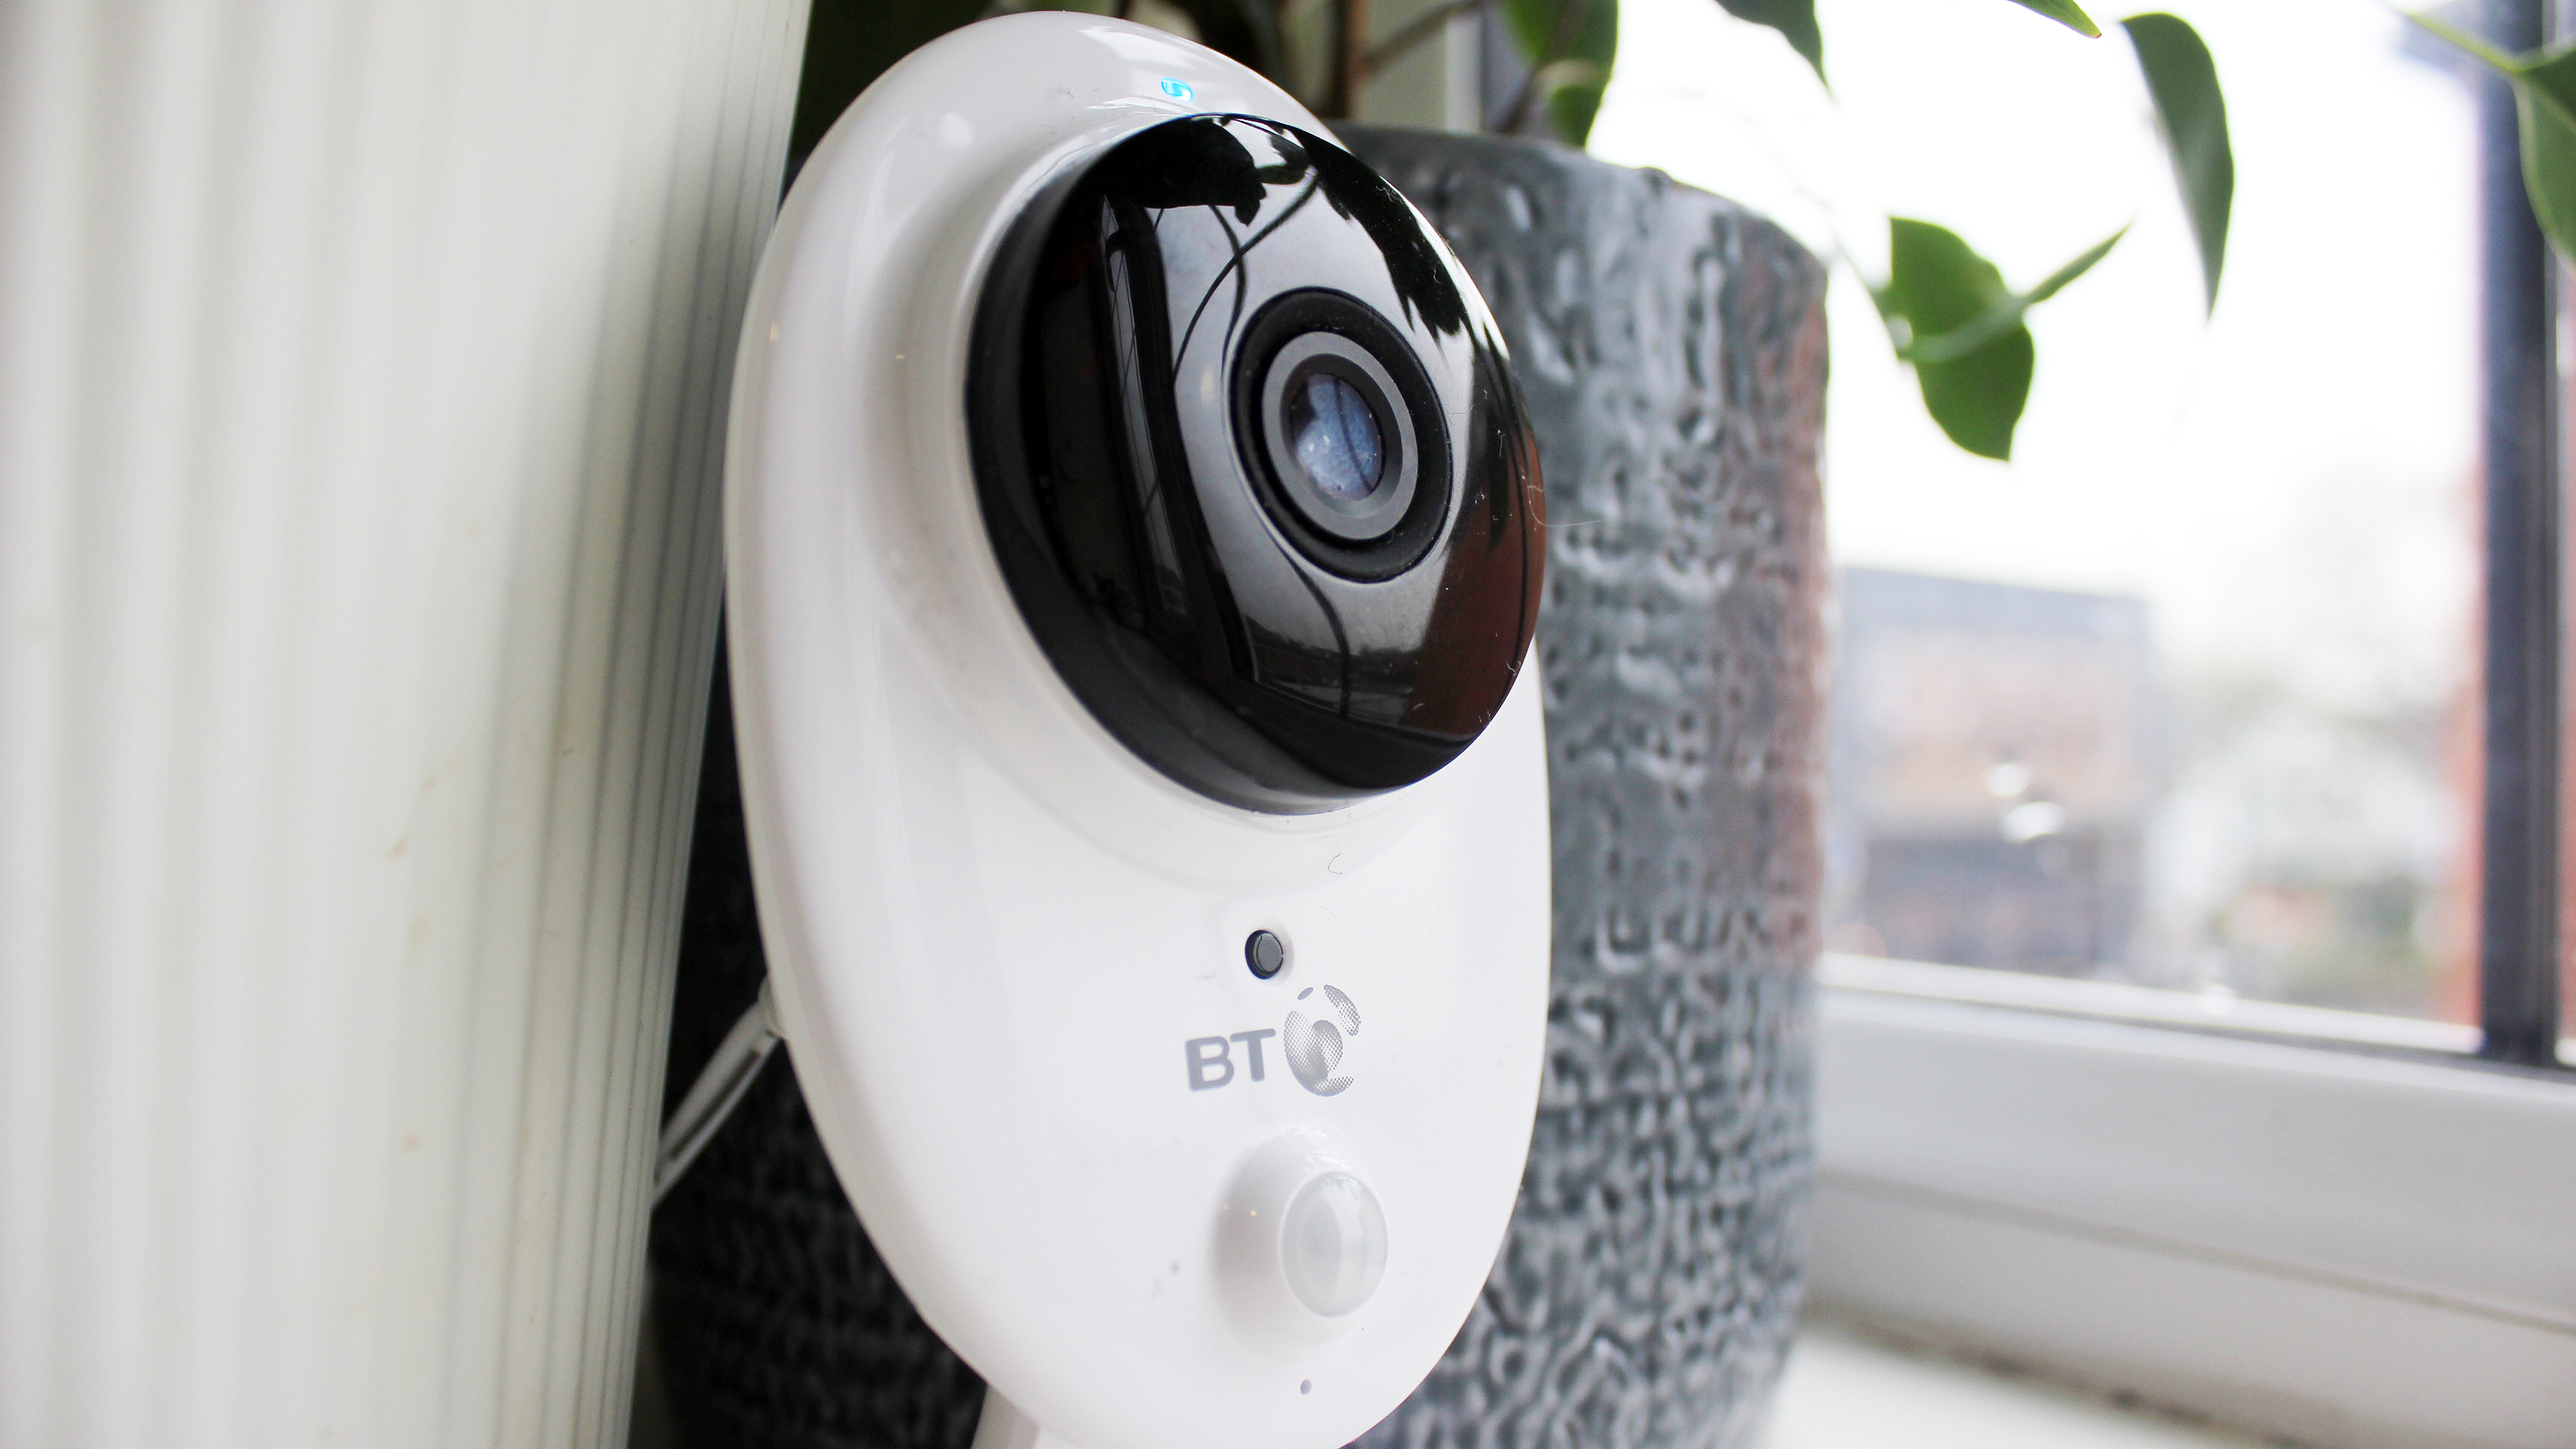 BT Smart Home Cam